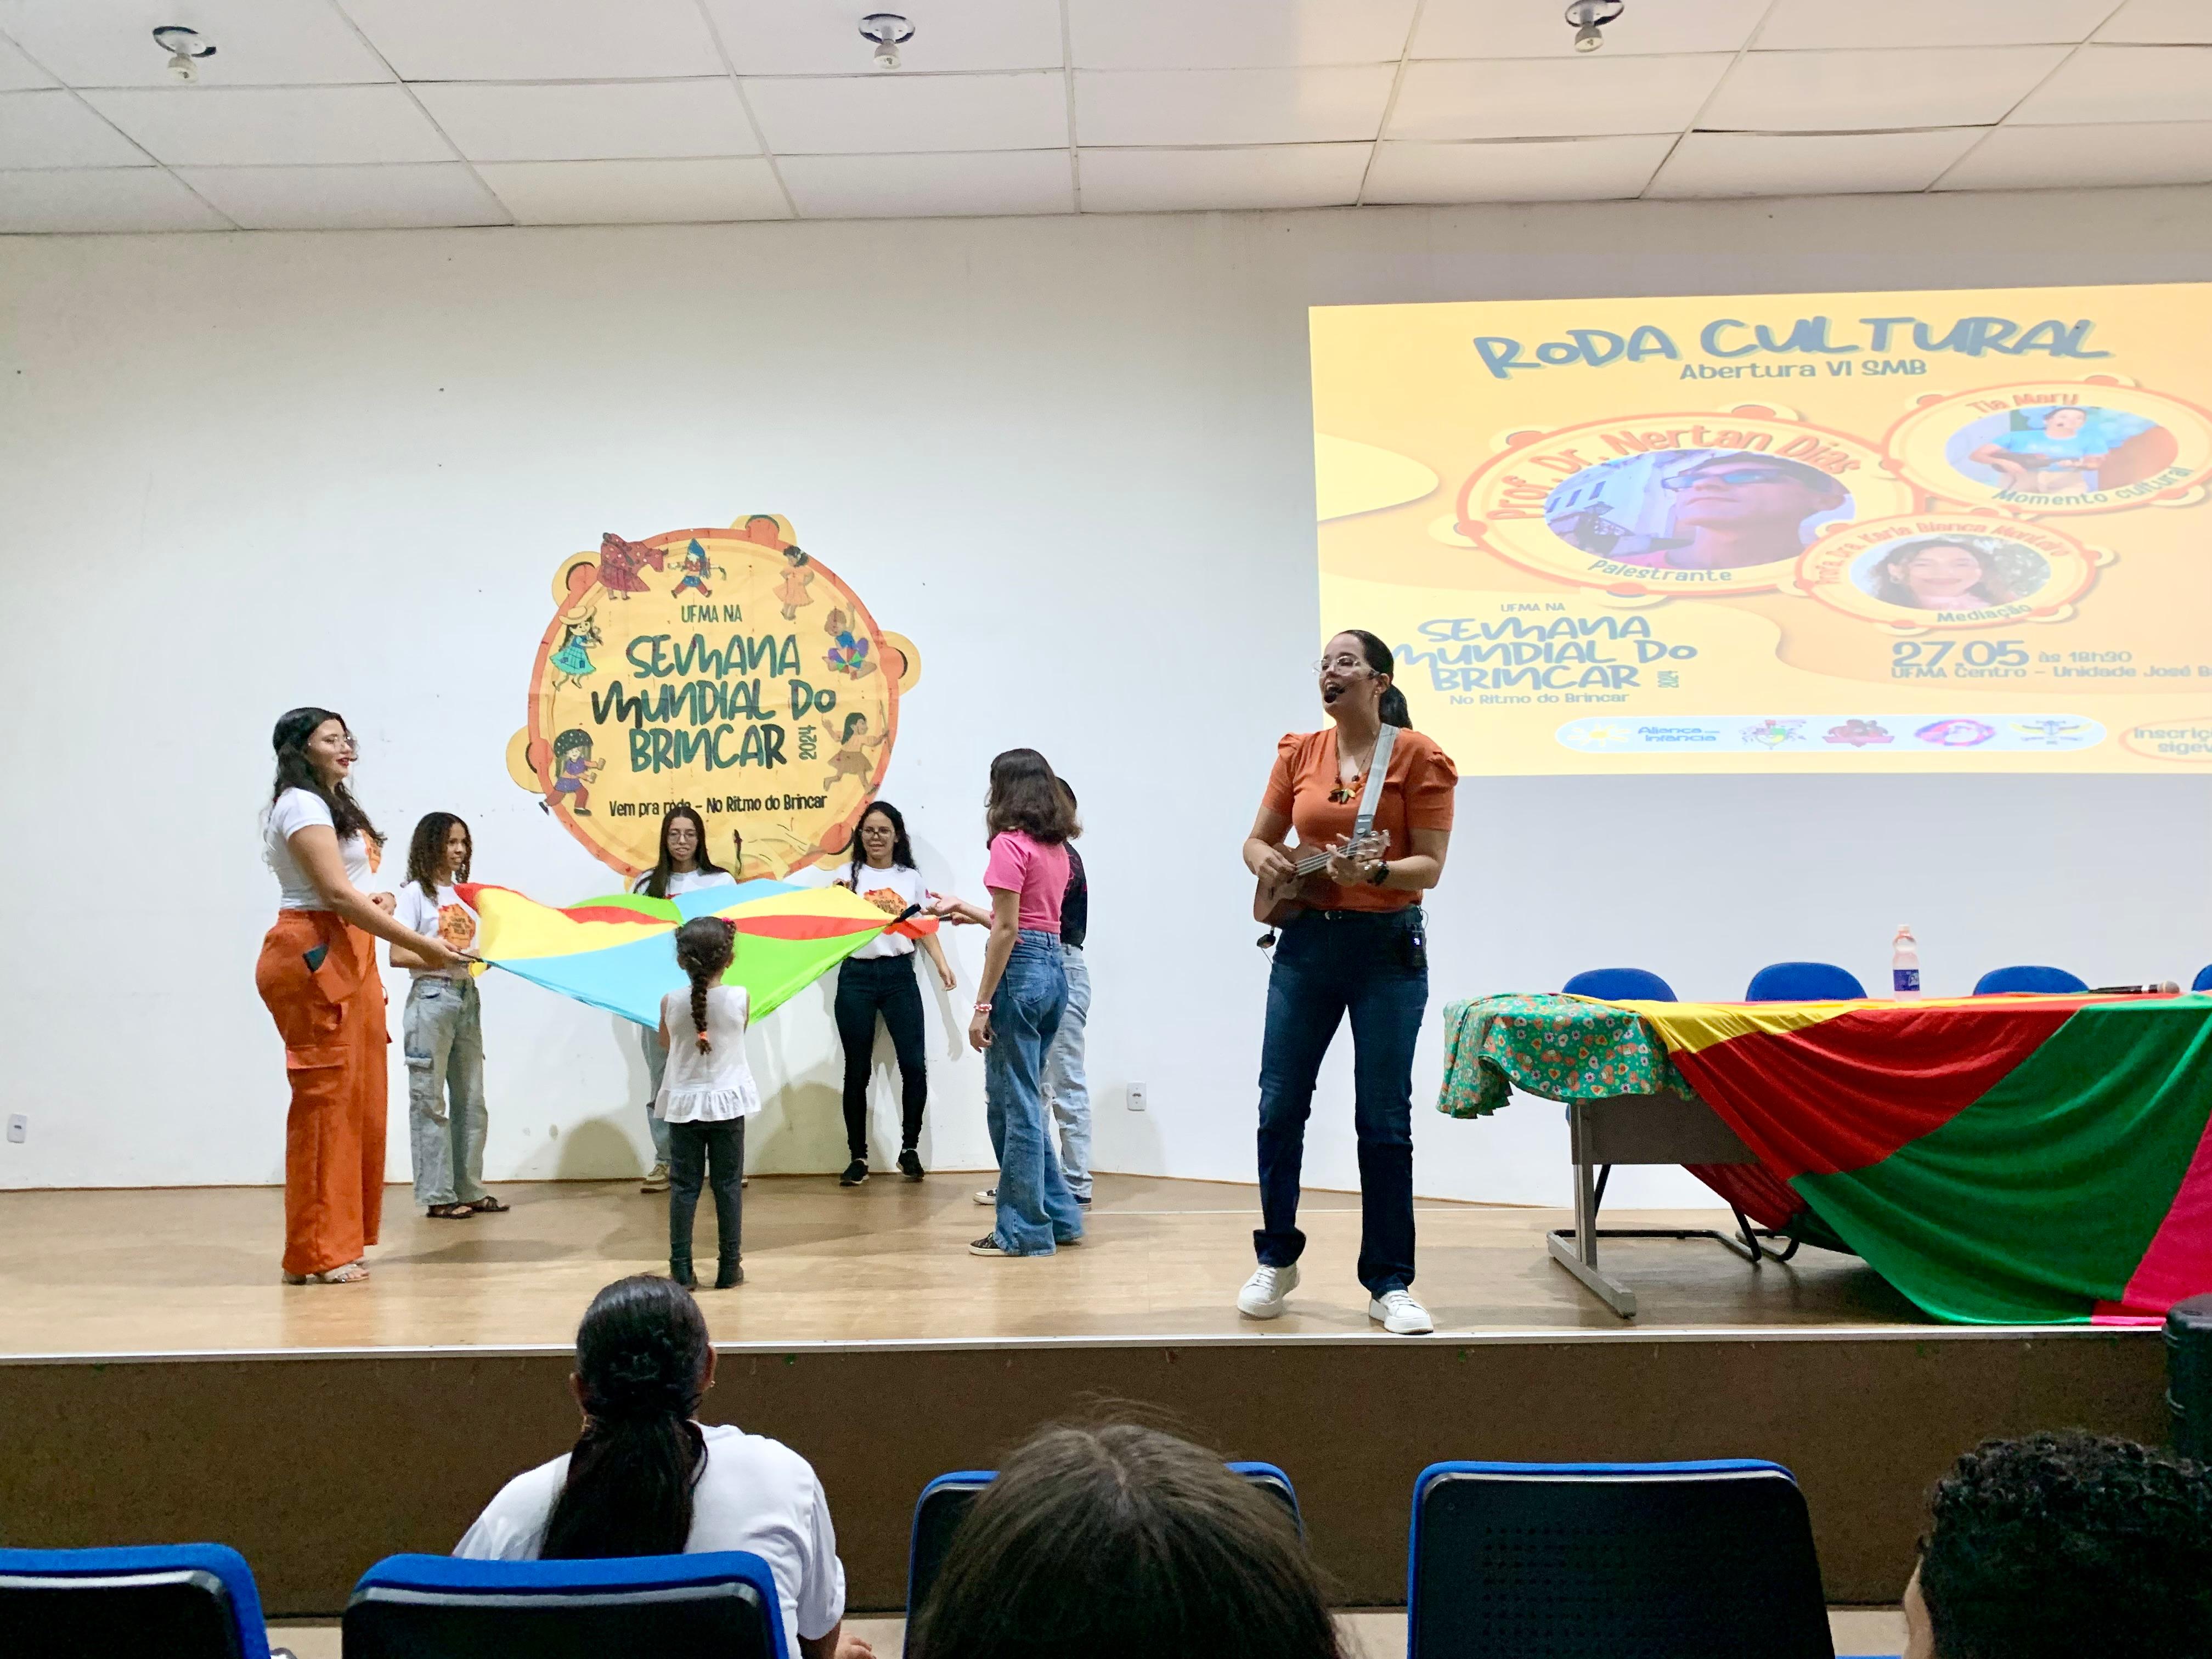 Alegria e diversão marcam a abertura da Semana Mundial do Brincar na UFMA de Imperatriz